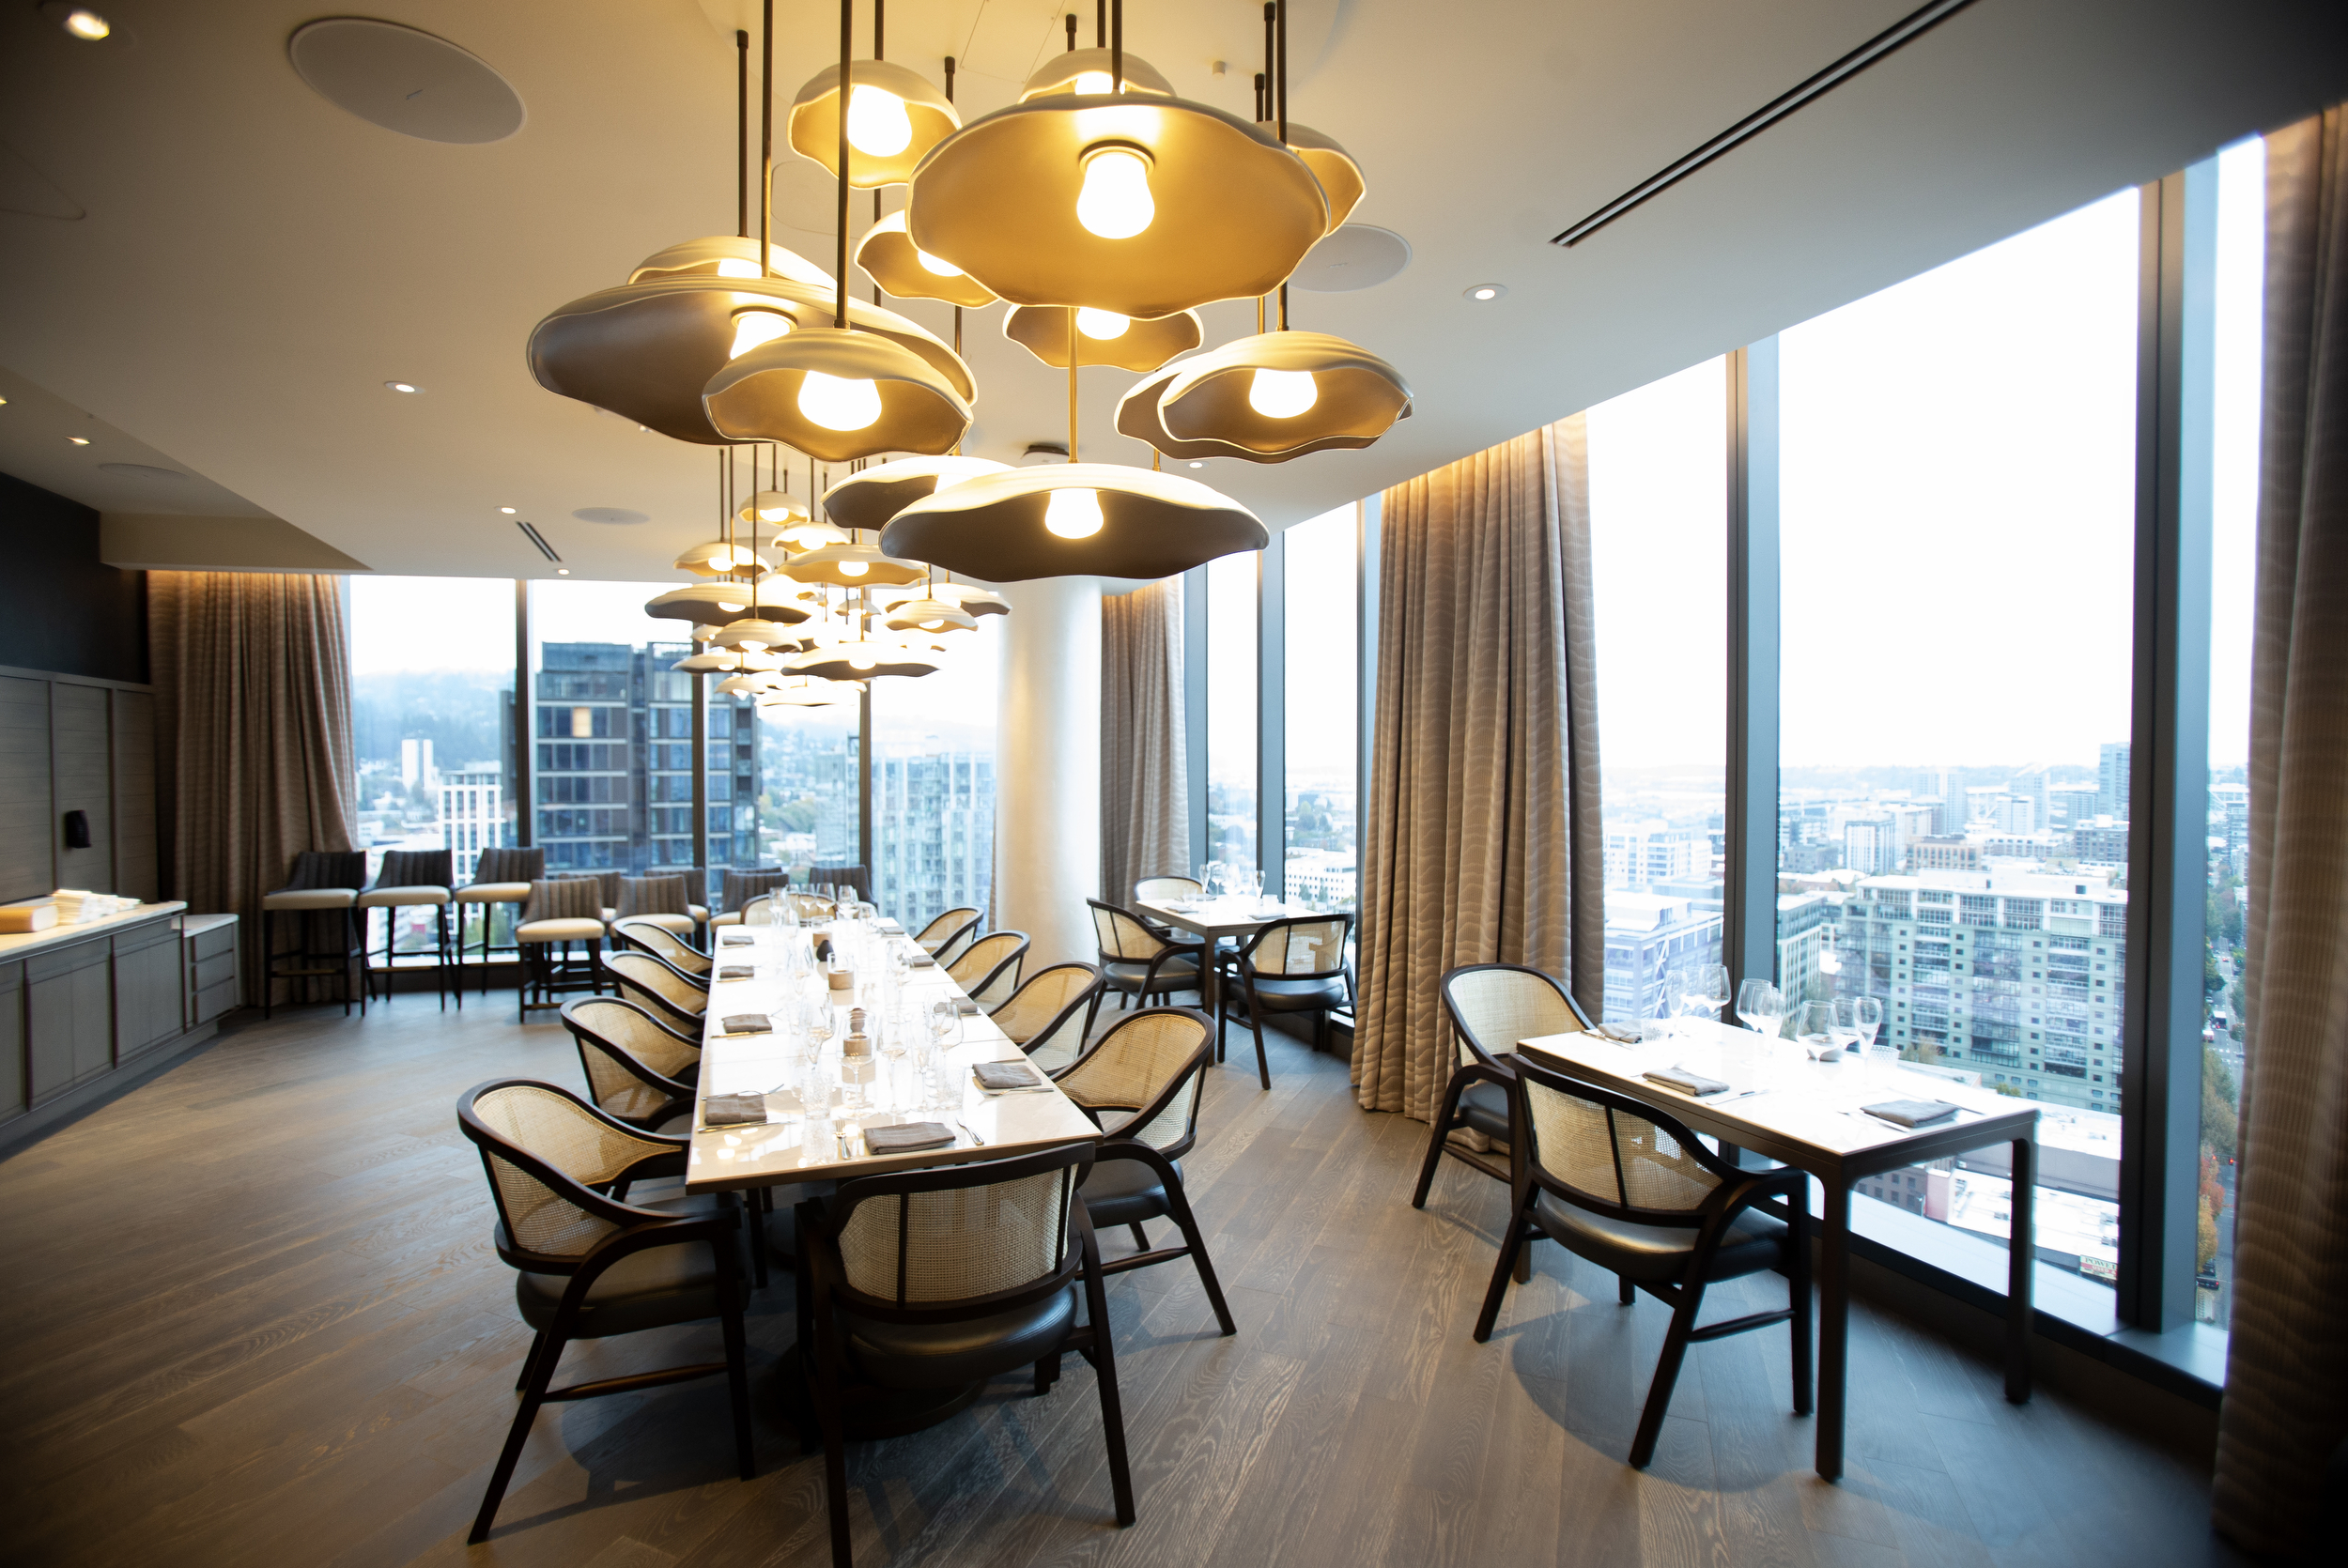 Dê uma olhada no interior do Bellpine, o novo restaurante no 20º andar do Ritz-Carlton